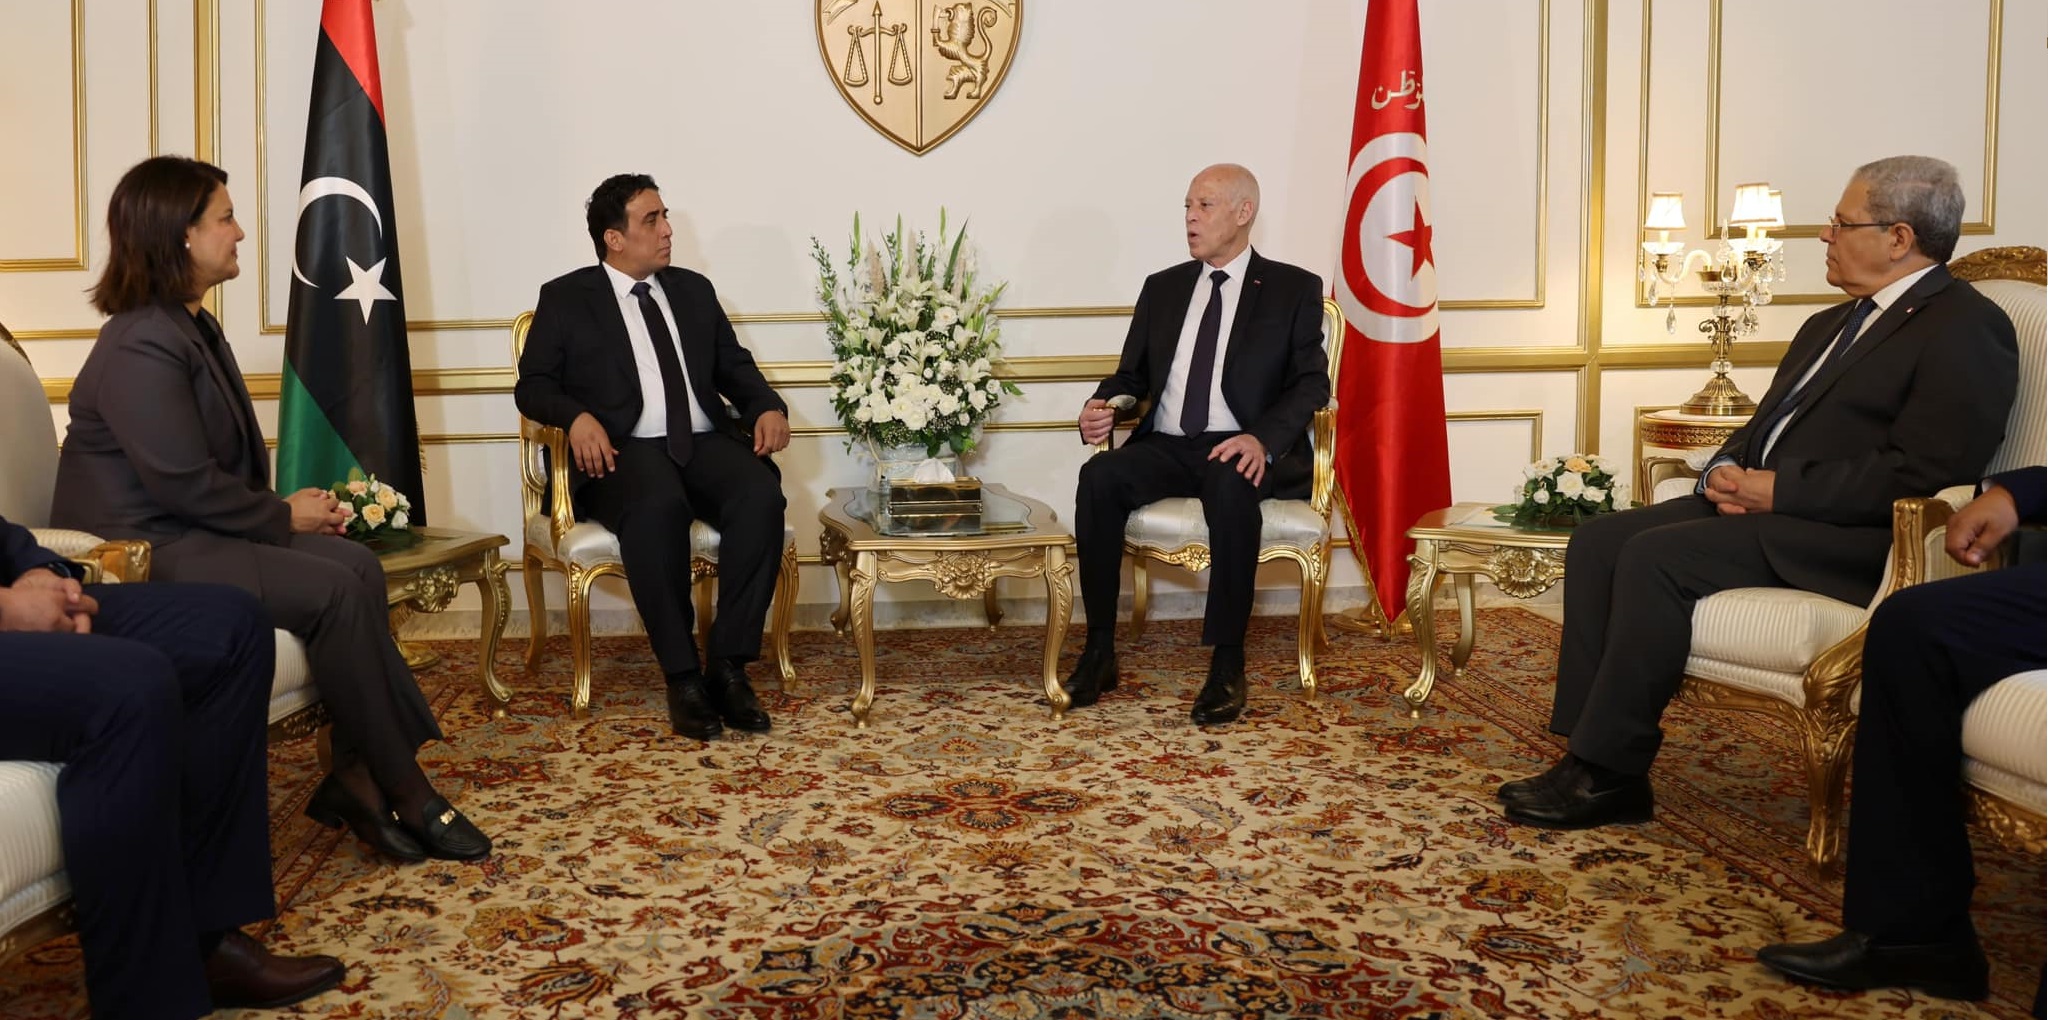 Le président du conseil présidentiel libyen suspend sa visite à Tunis